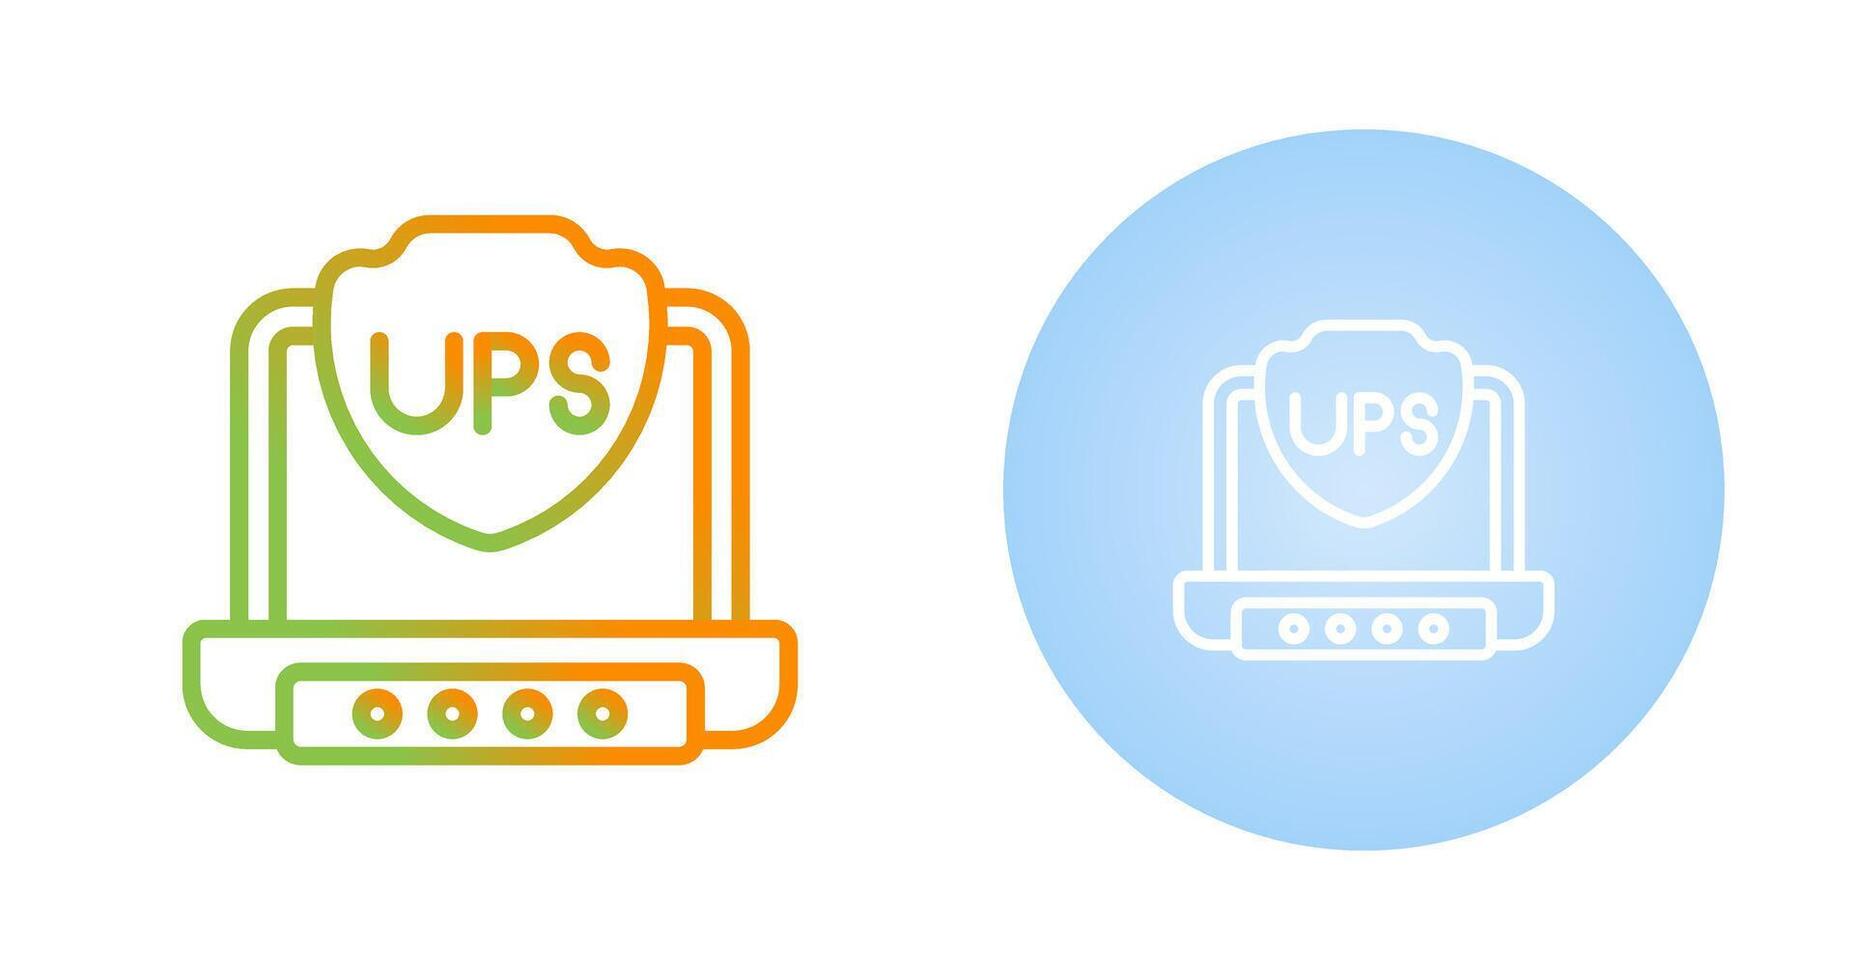 UPS vector icono